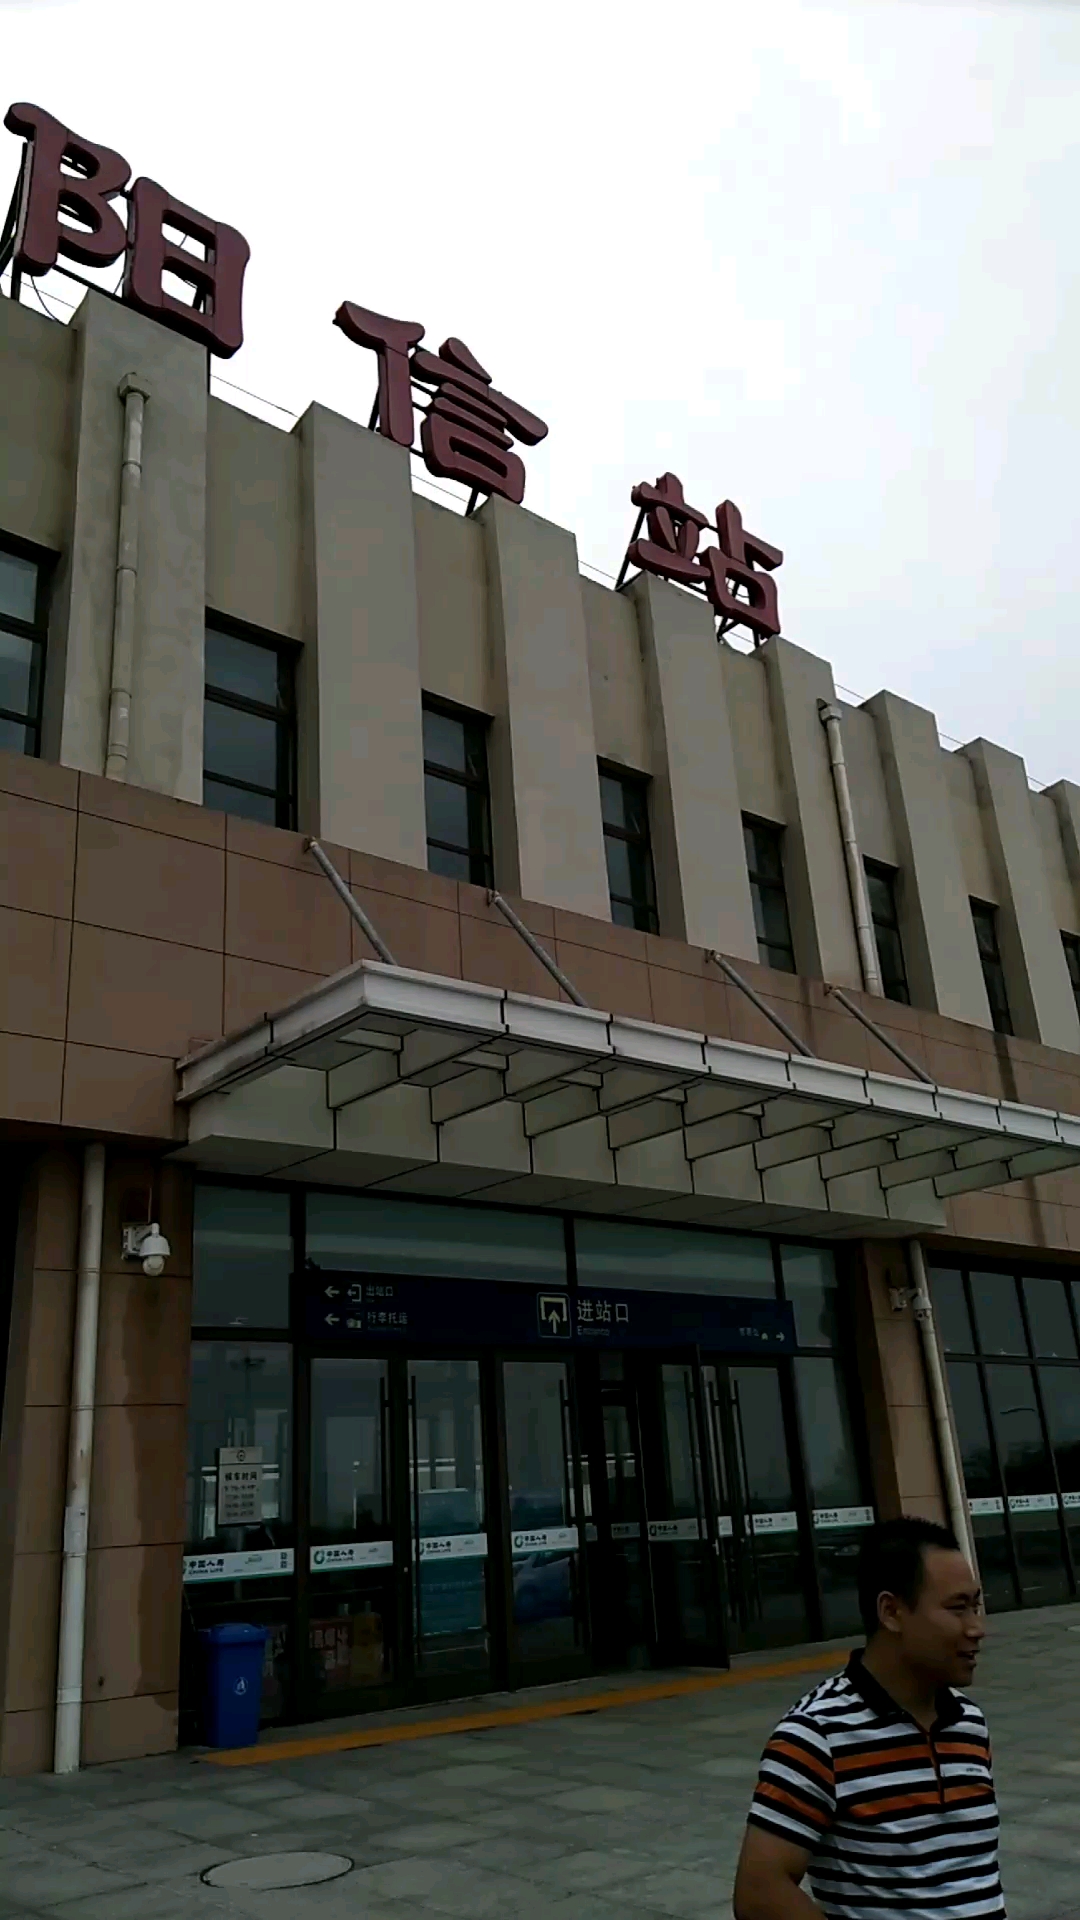 阳信火车站图片